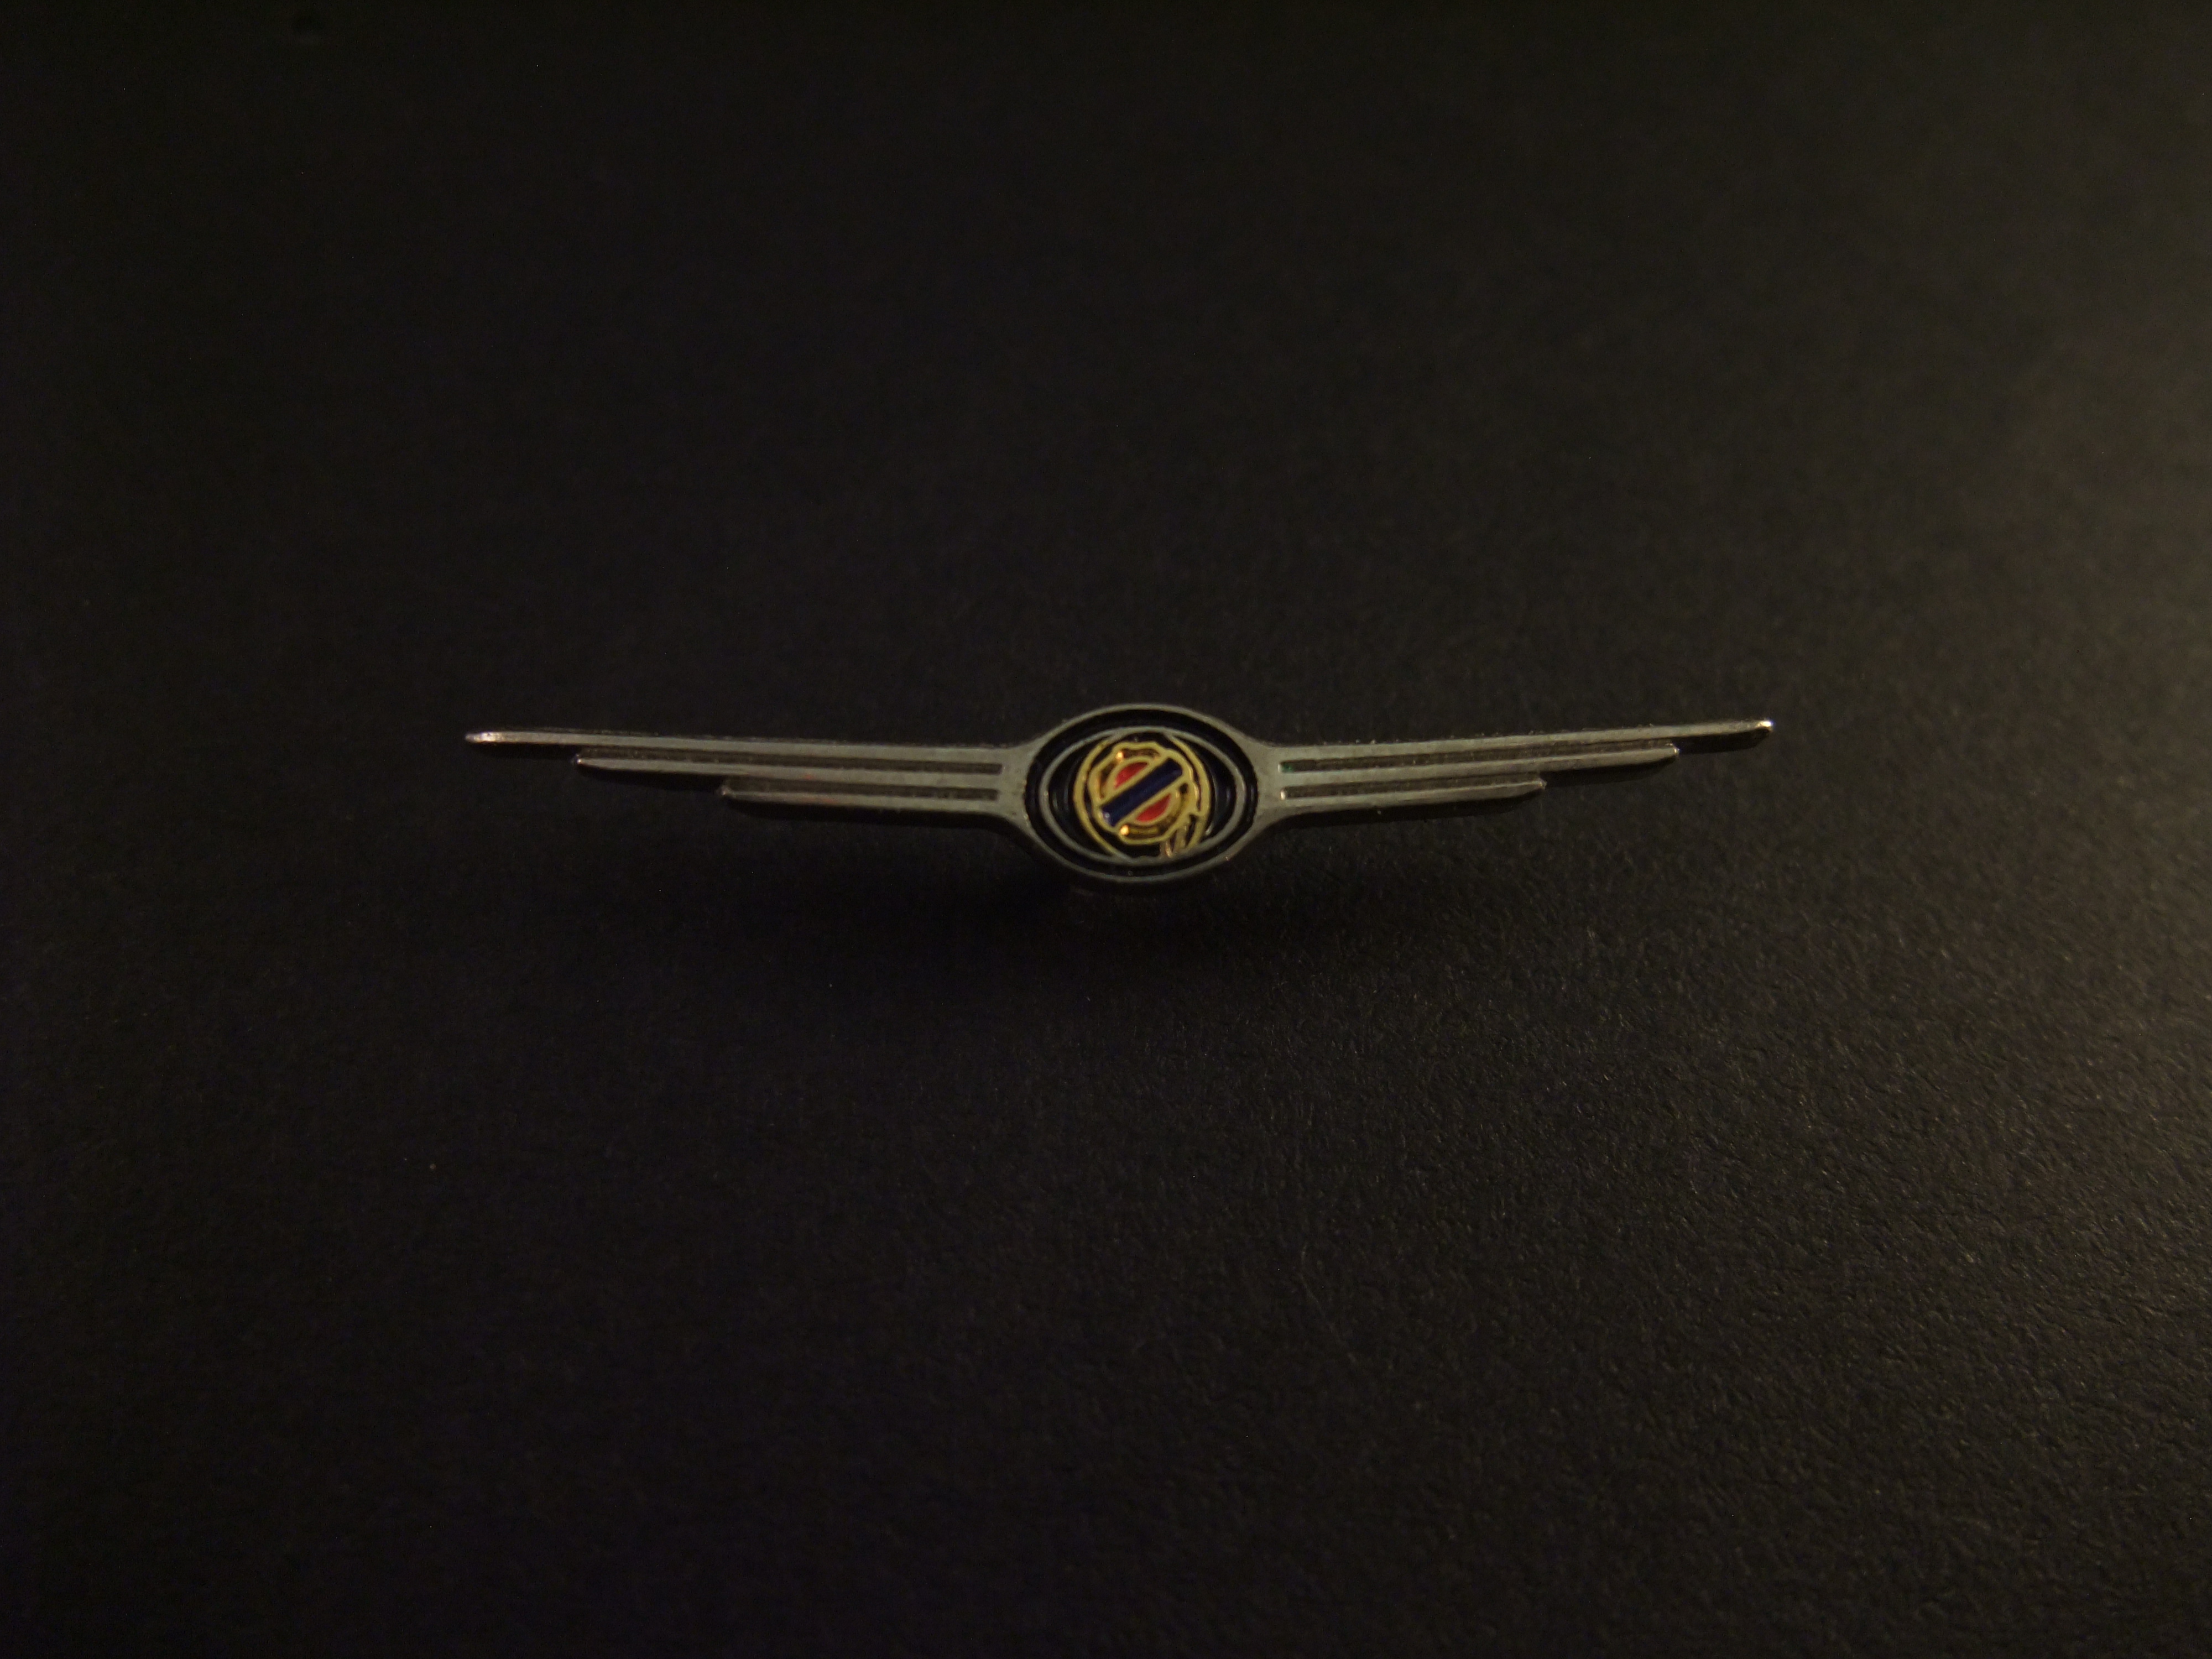 Chrysler Sebring wing zilverkleurig logo